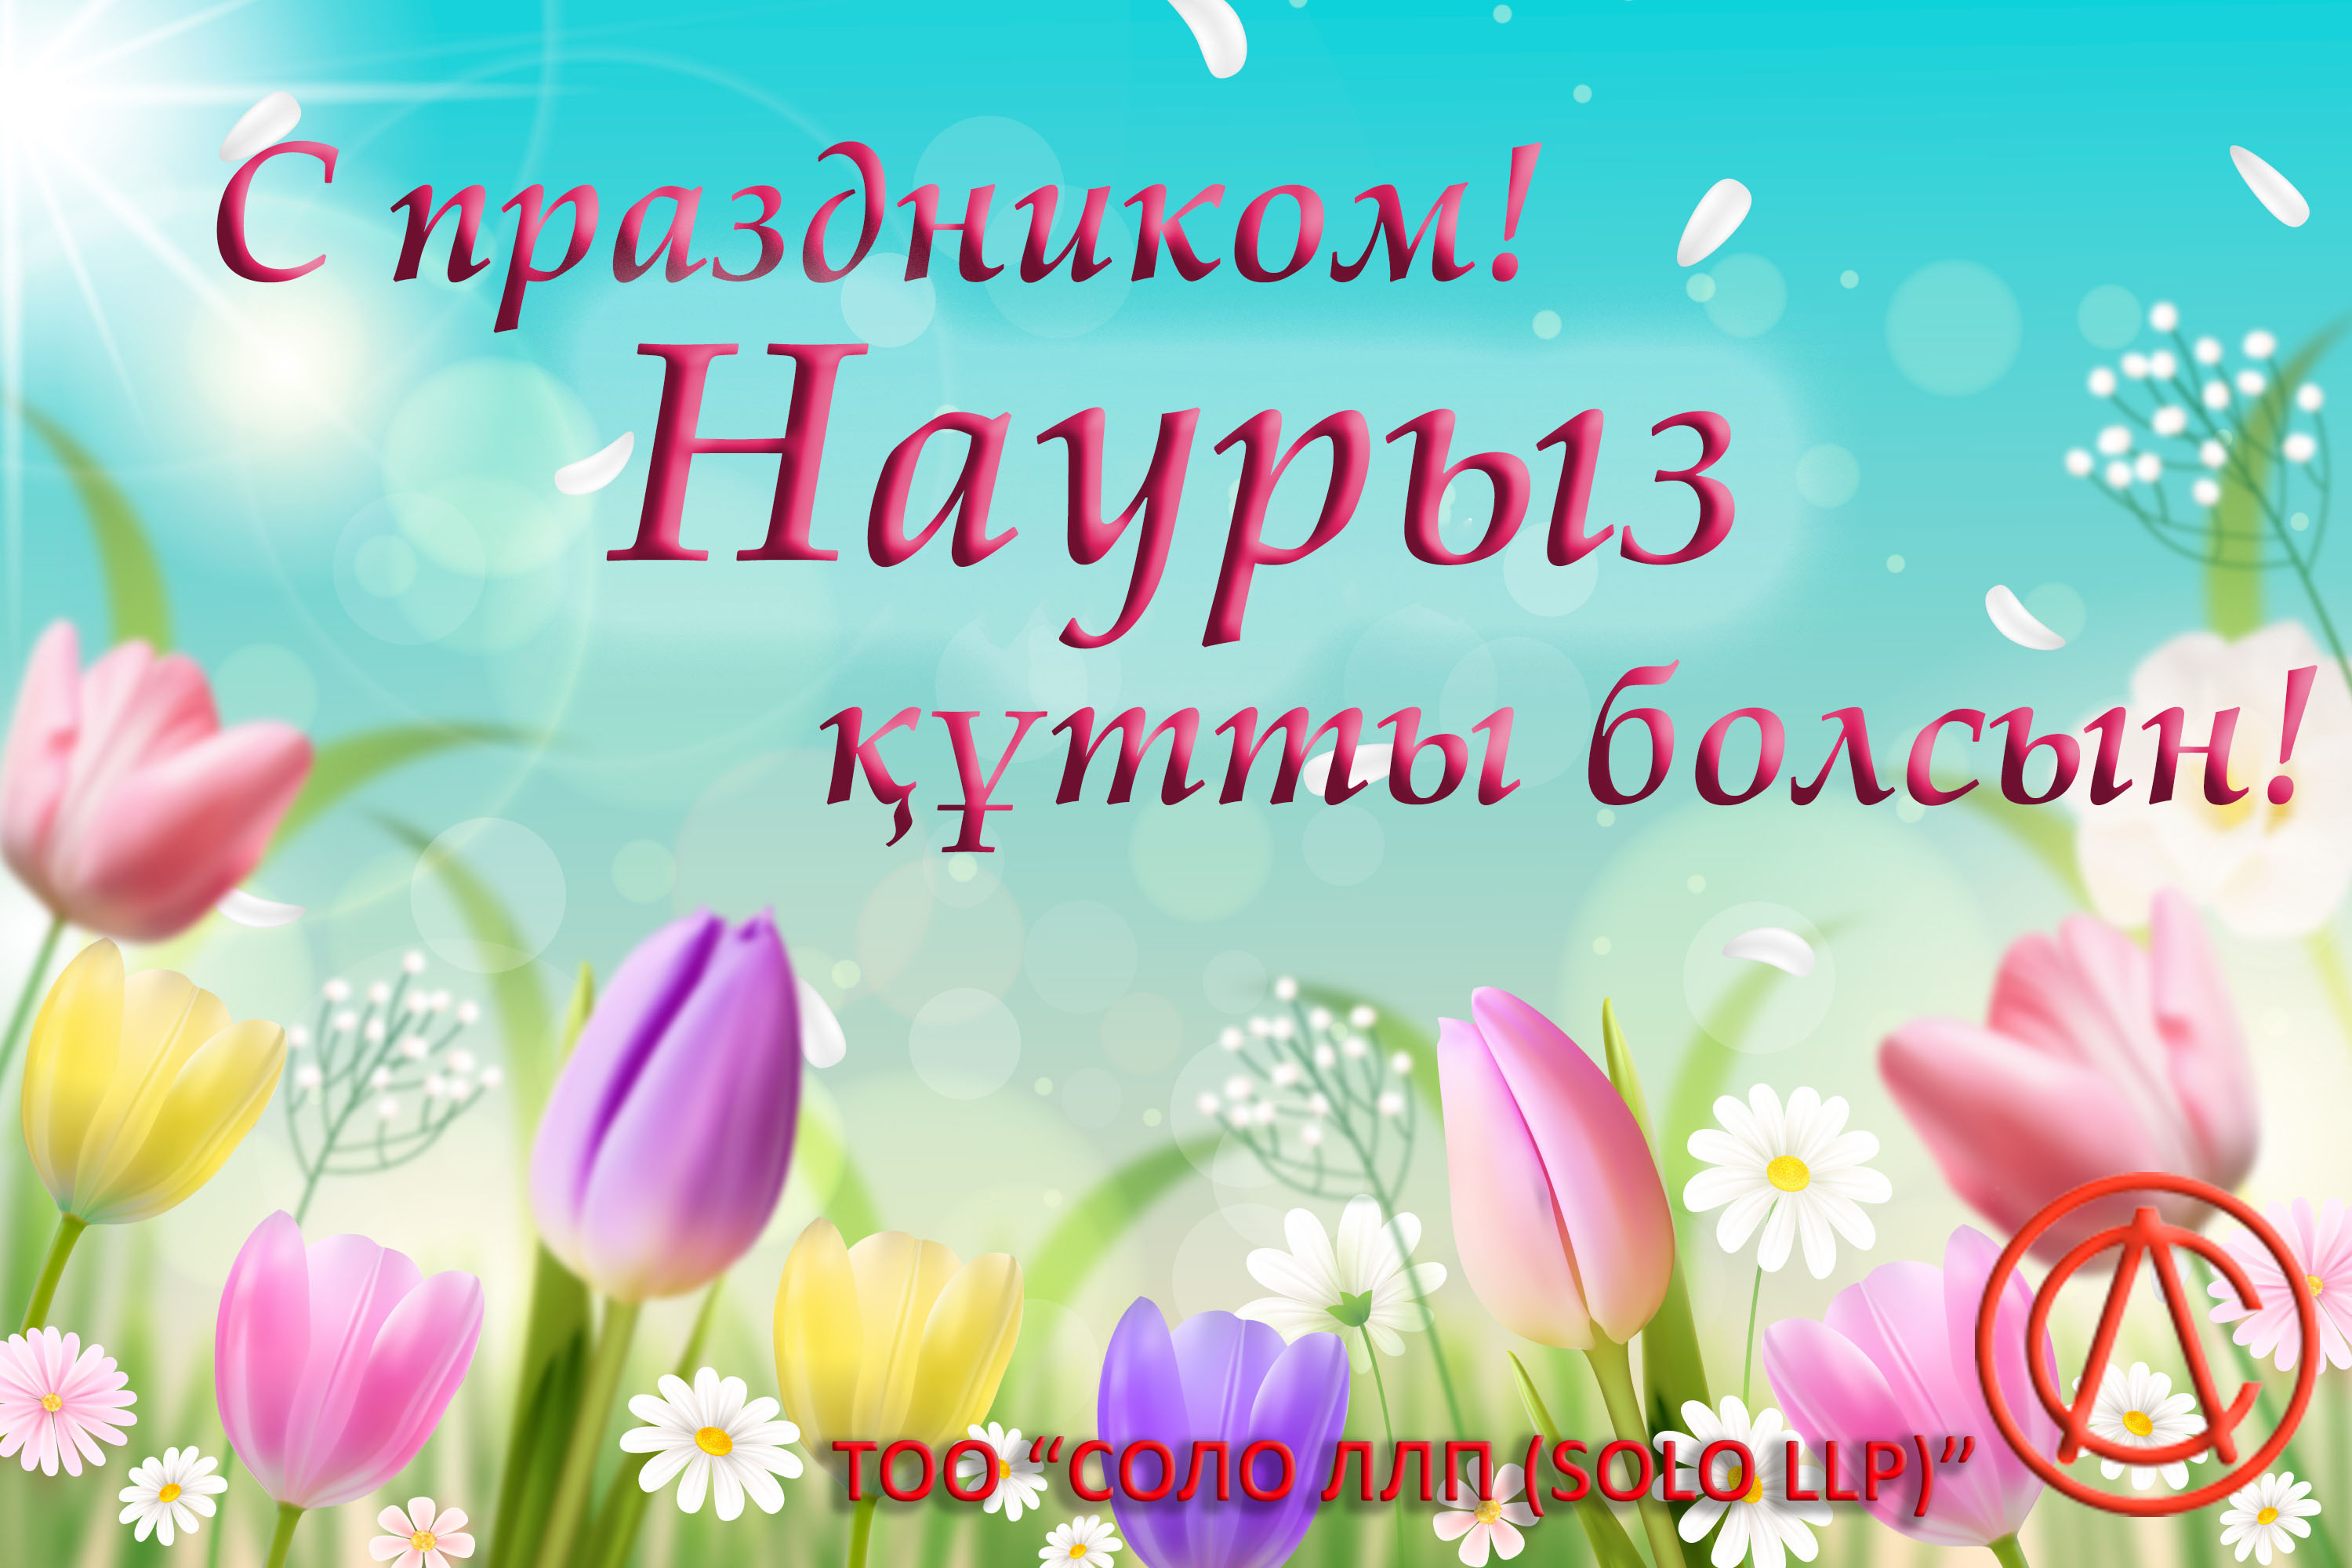 Поздравляем с праздником Наурыз!